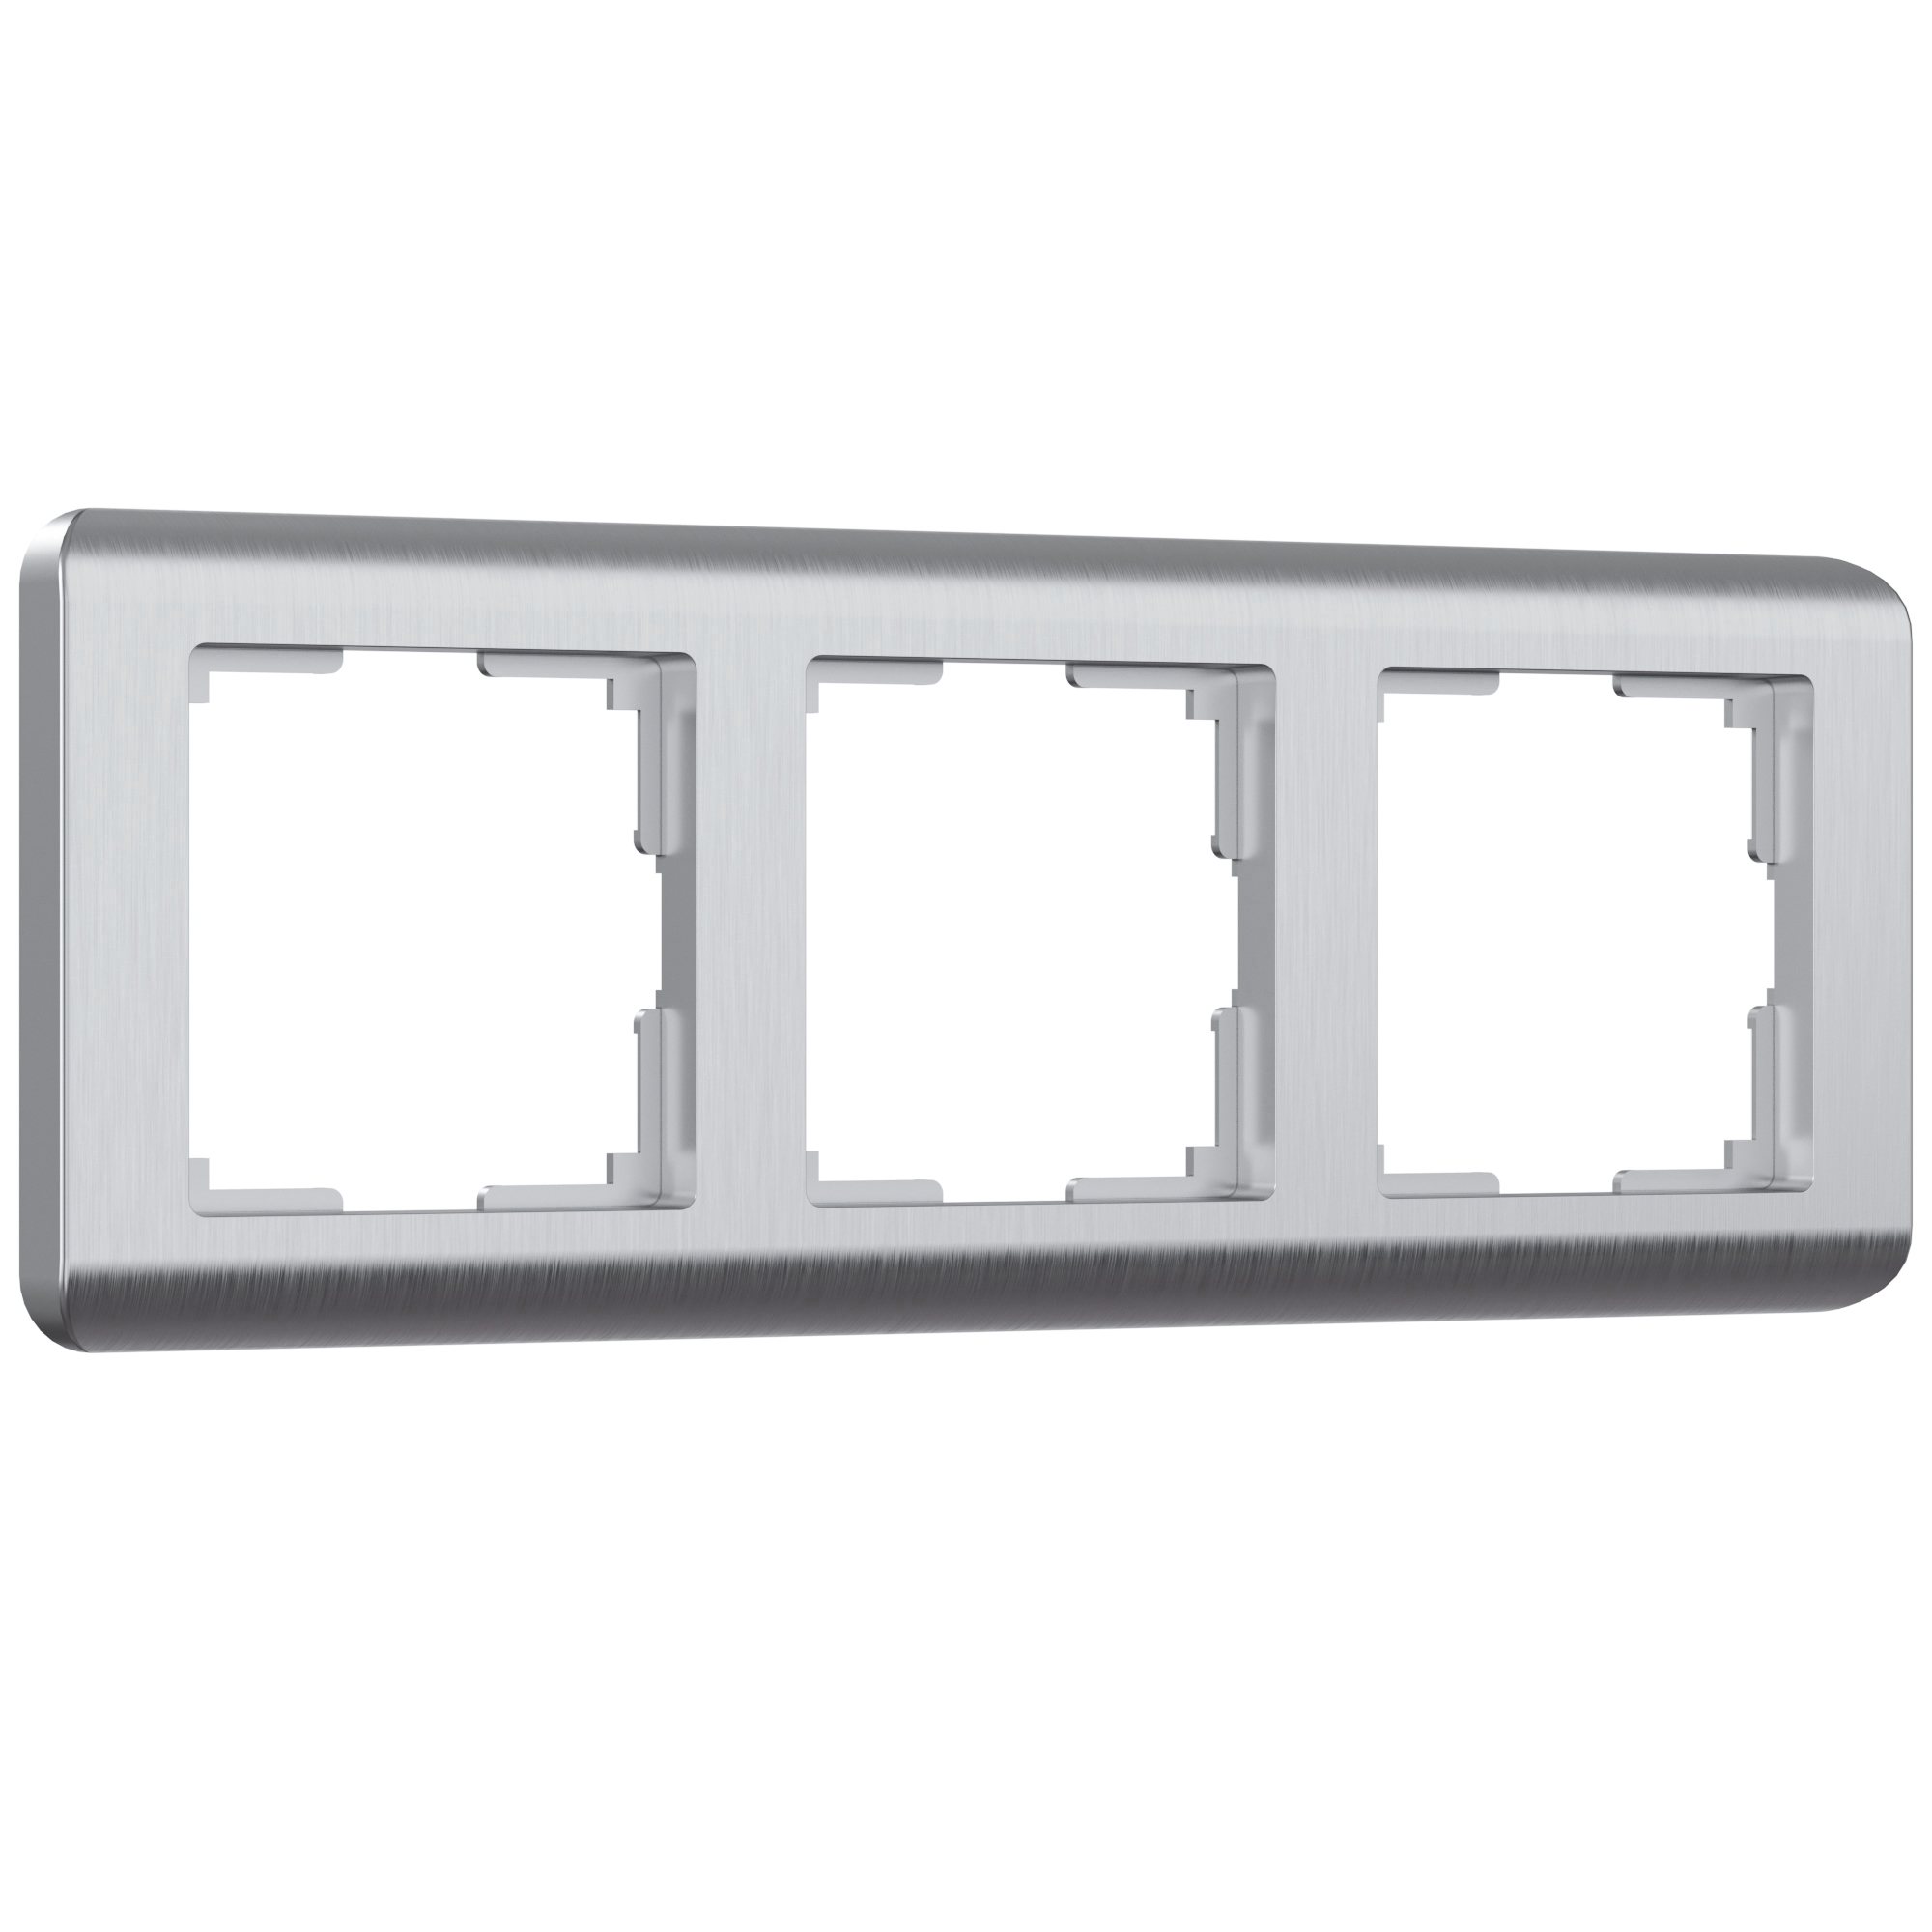 Рамка для розетки / выключателя на 3 поста Werkel W0032106 Stream серебряный пластик рамка на 4 поста серебряный werkel wl12 frame 04 w0042106